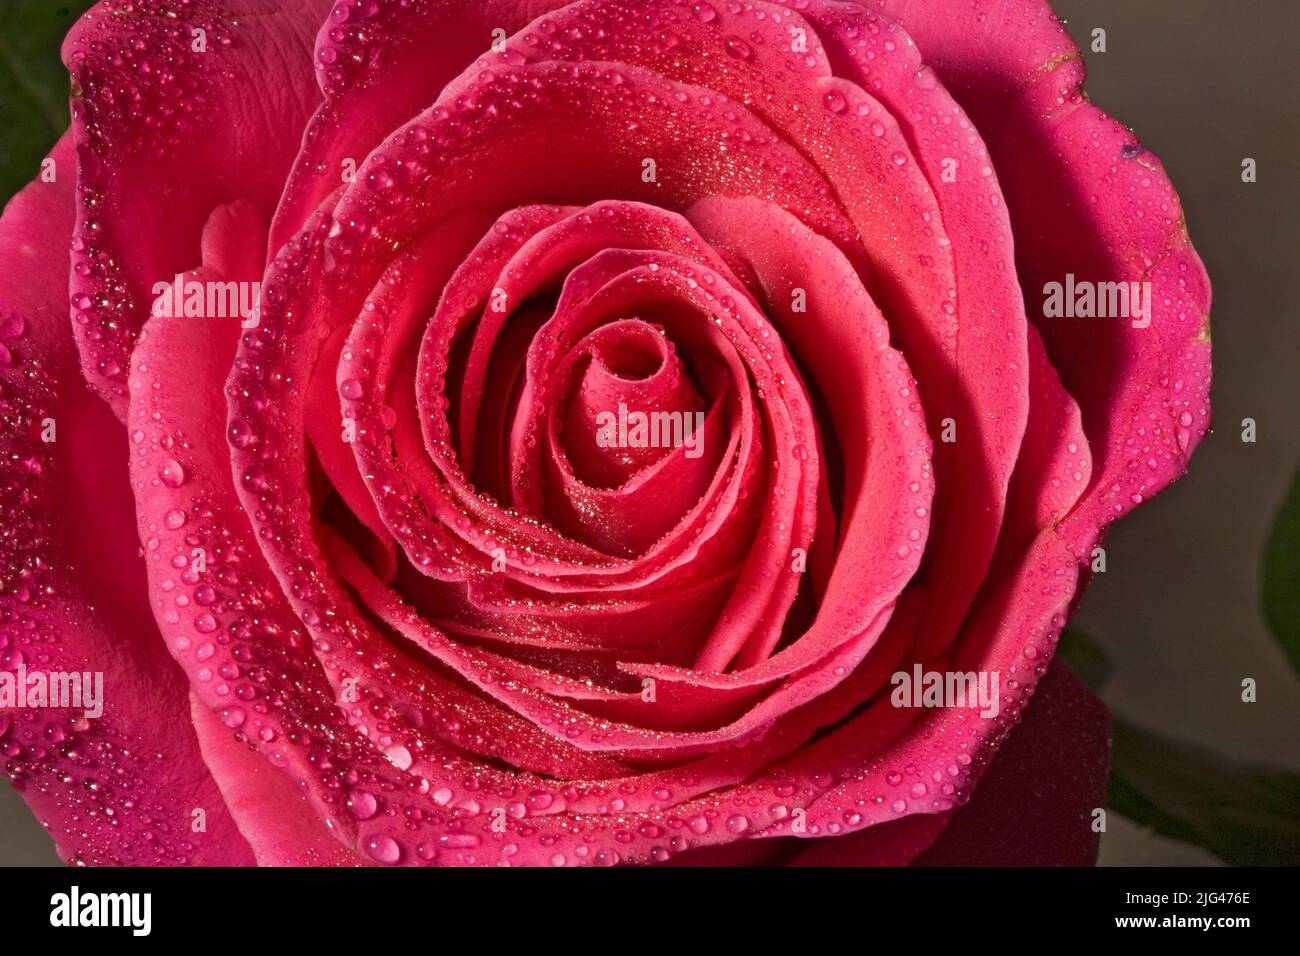 Vue rapprochée du centre d'une rose rouge. Banque D'Images